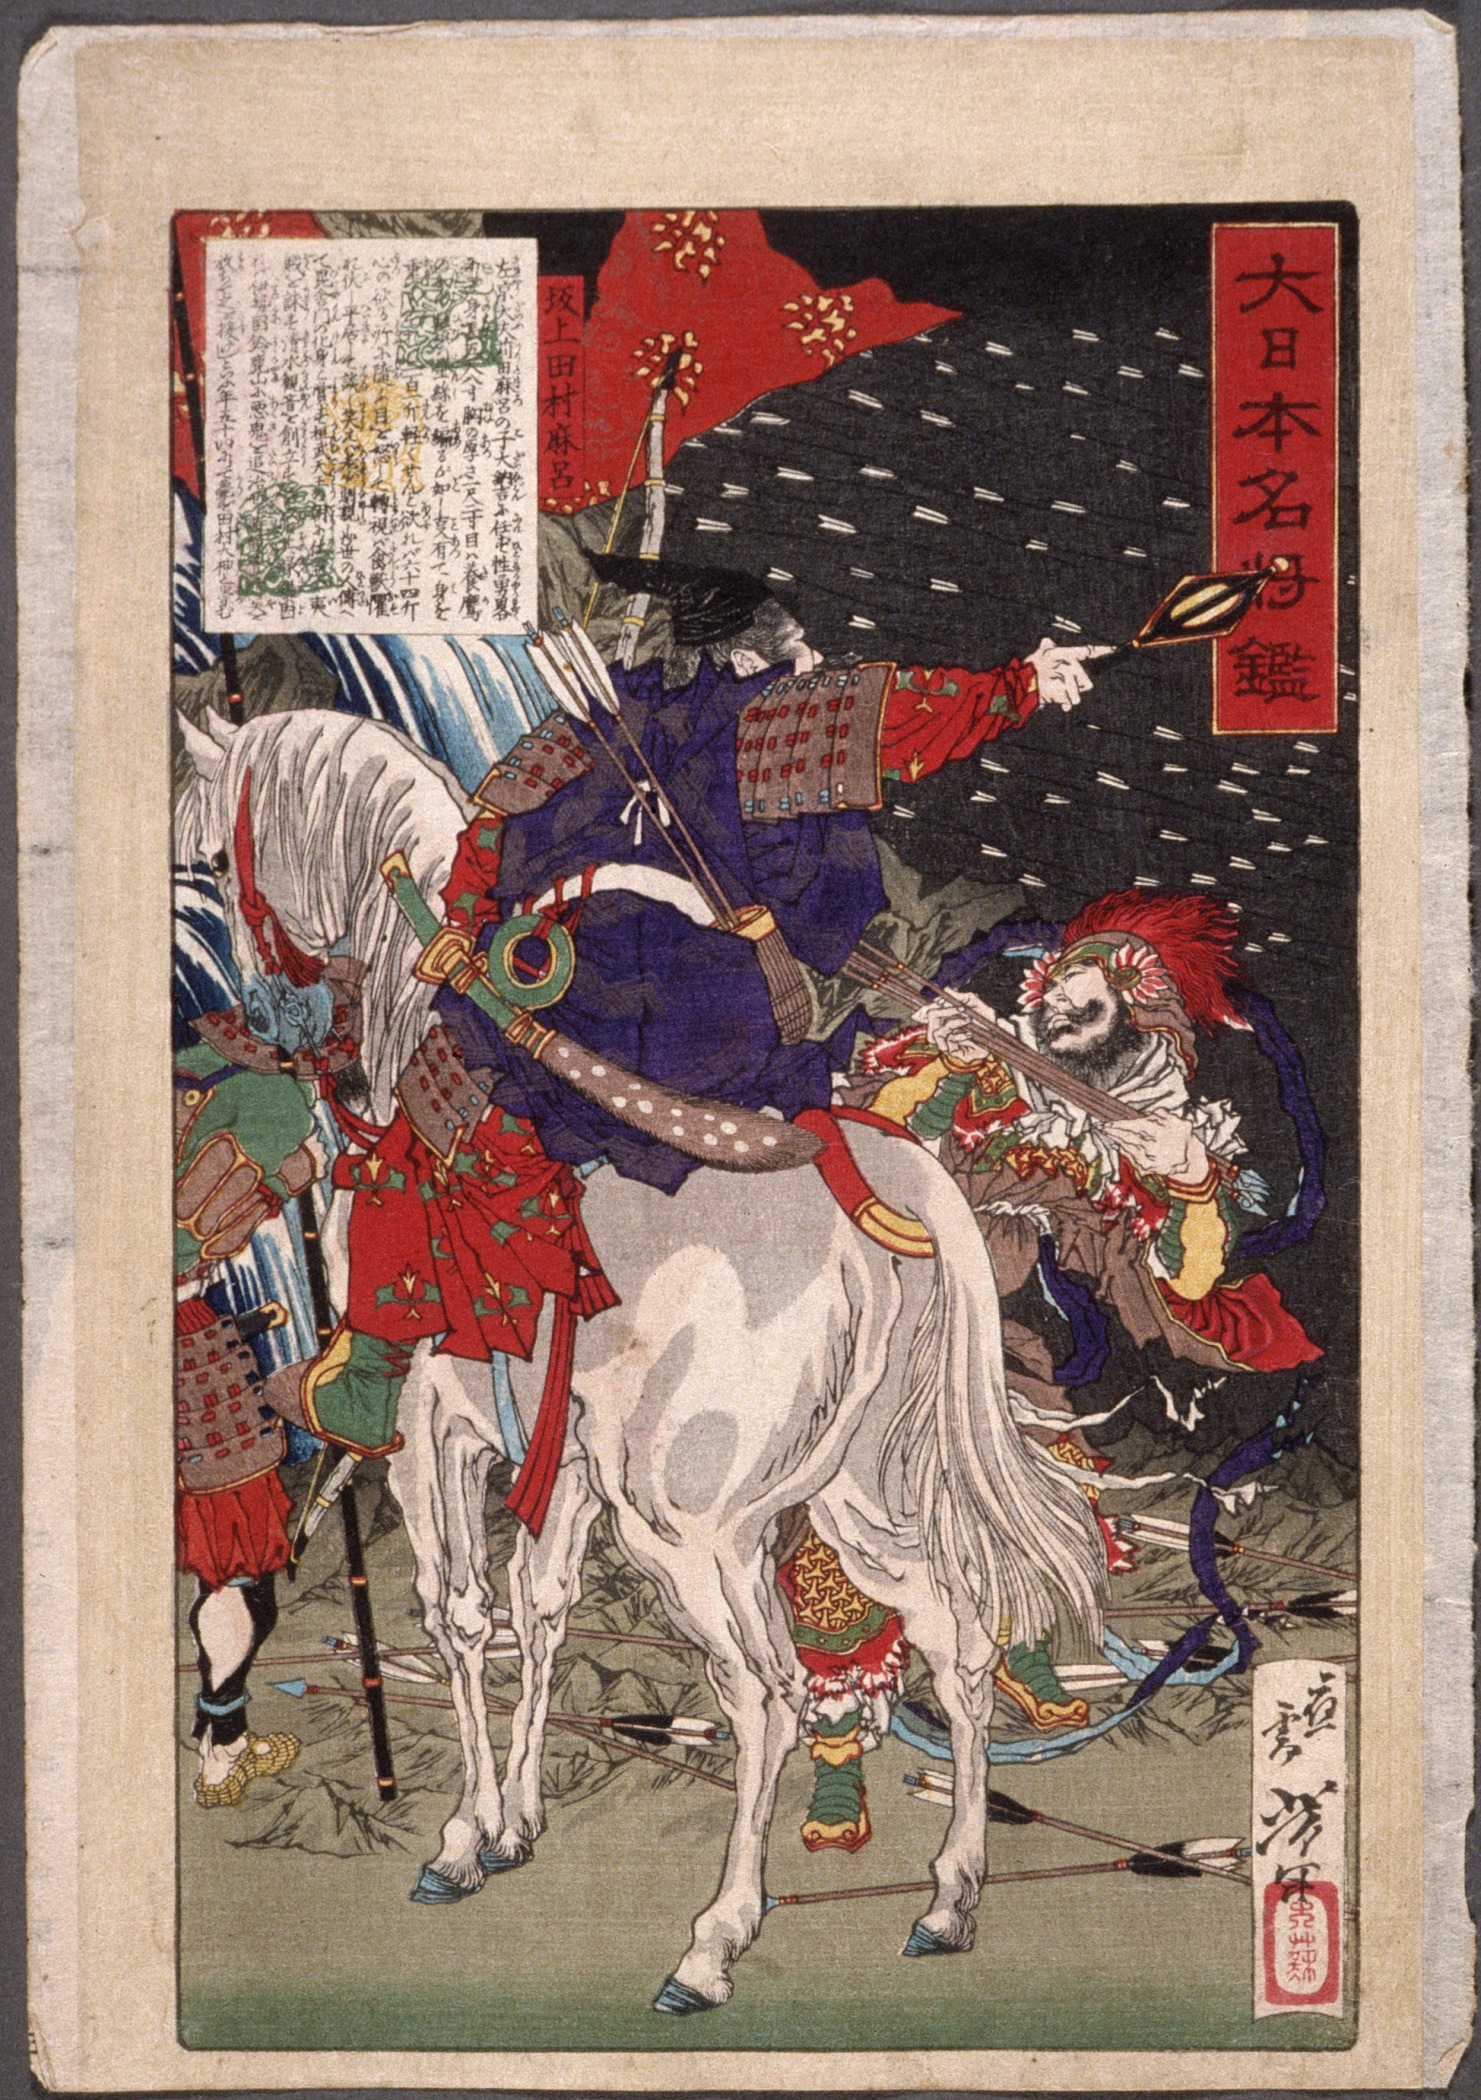 Sakanoue no Tamuramaro sotto una pioggia di frecce by Tsukioka Yoshitoshi - 1876 - 32 x 20,6 cm 